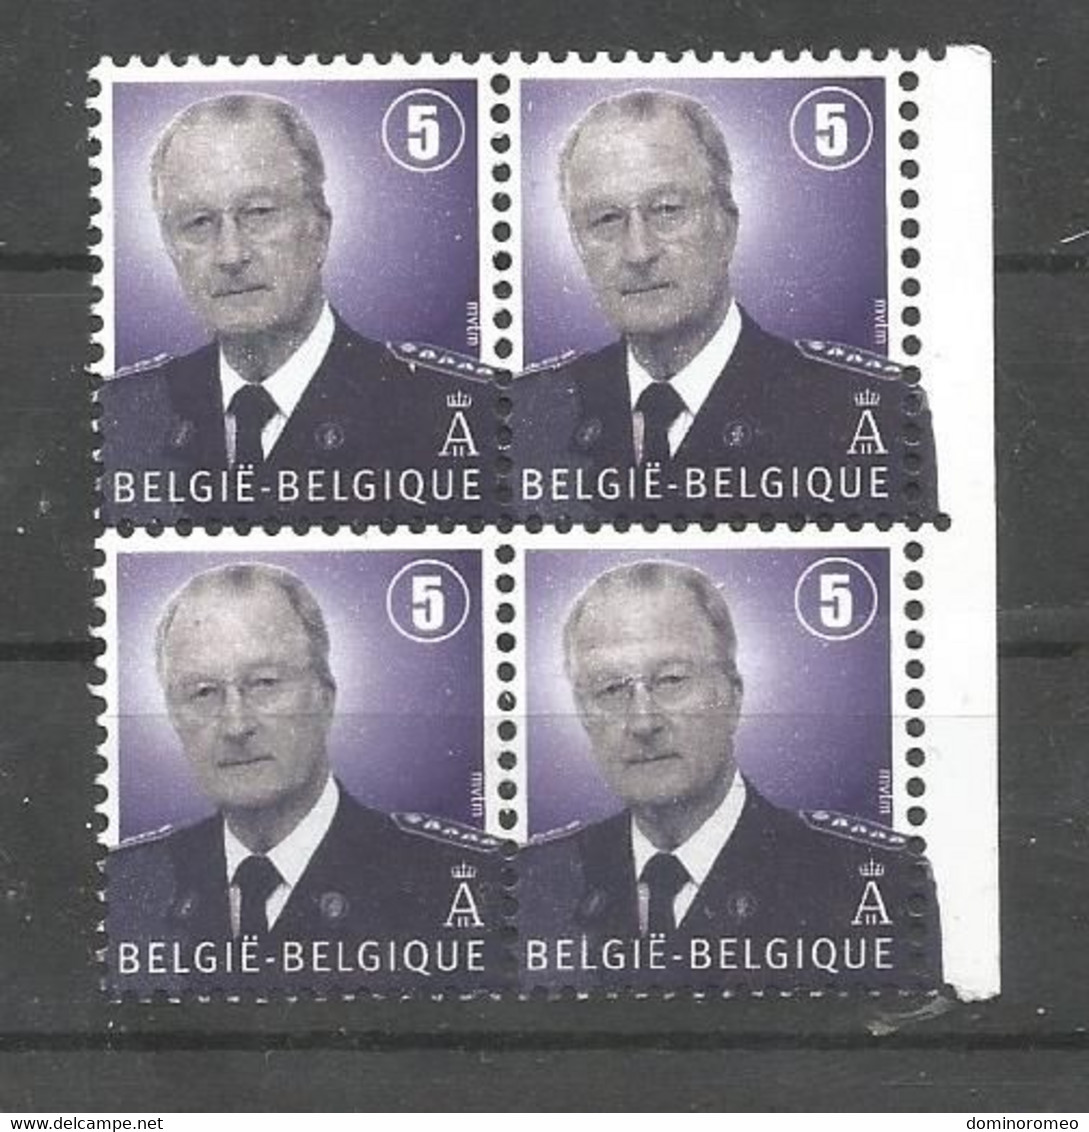 OCB 3698 ** Postfris Zonder Scharnier In Blok Van 4 - 1993-2013 King Albert II (MVTM)